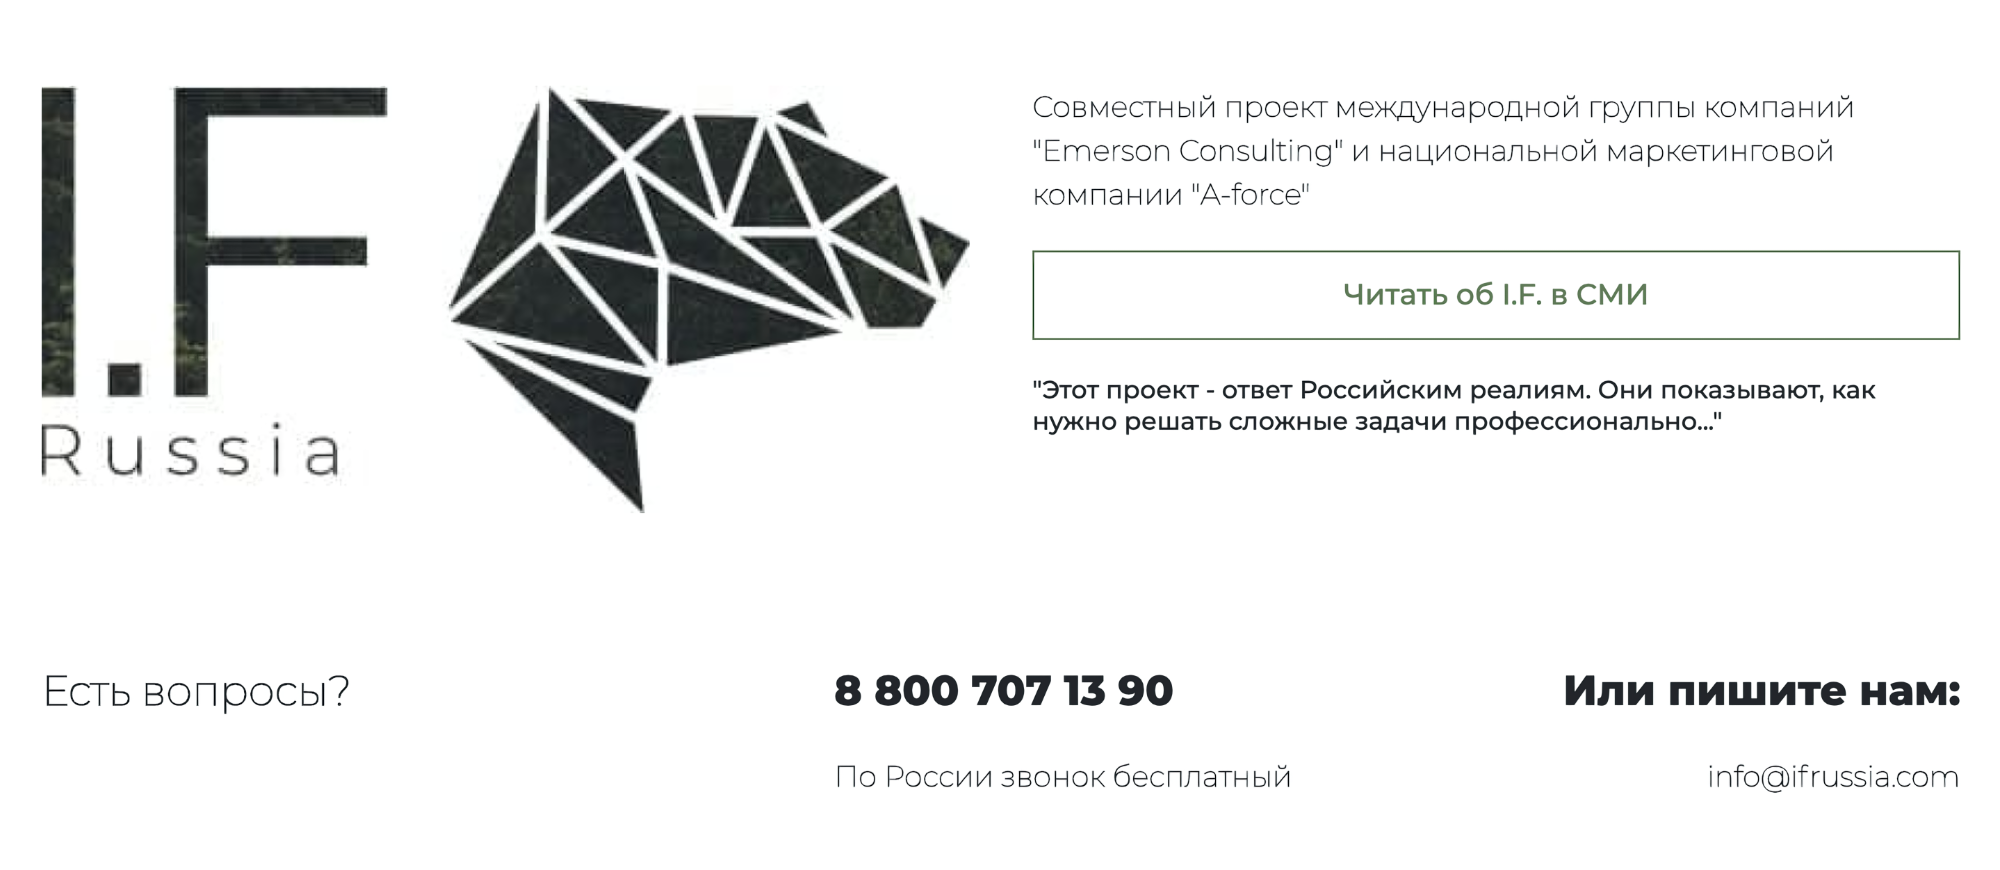 I. F. Russia на сайте для инвестпроектов пишет о своей принадлежности к ГК «Эмерсон-консалтинг», но не афиширует ее на сайте для инвесторов